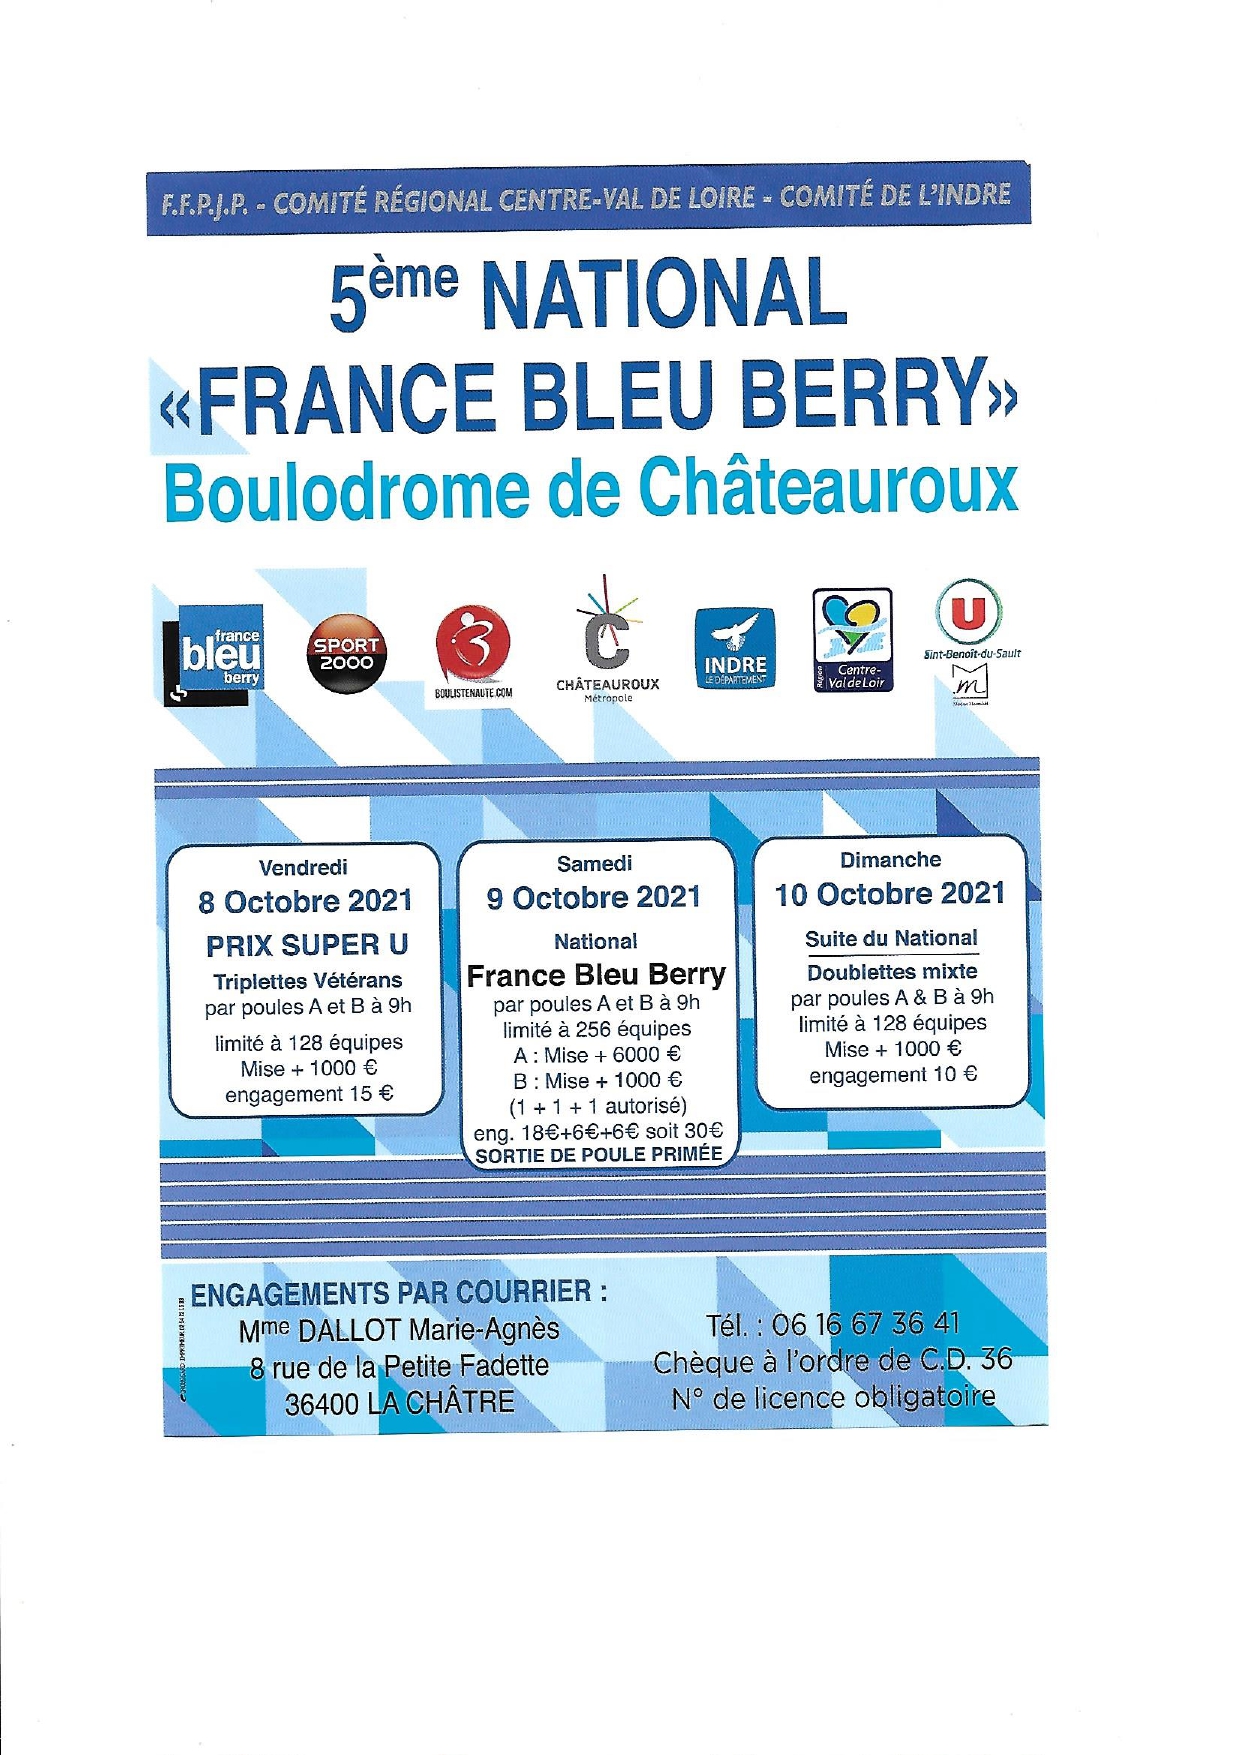 Le National France Bleu Berry à Chateauroux est annulé